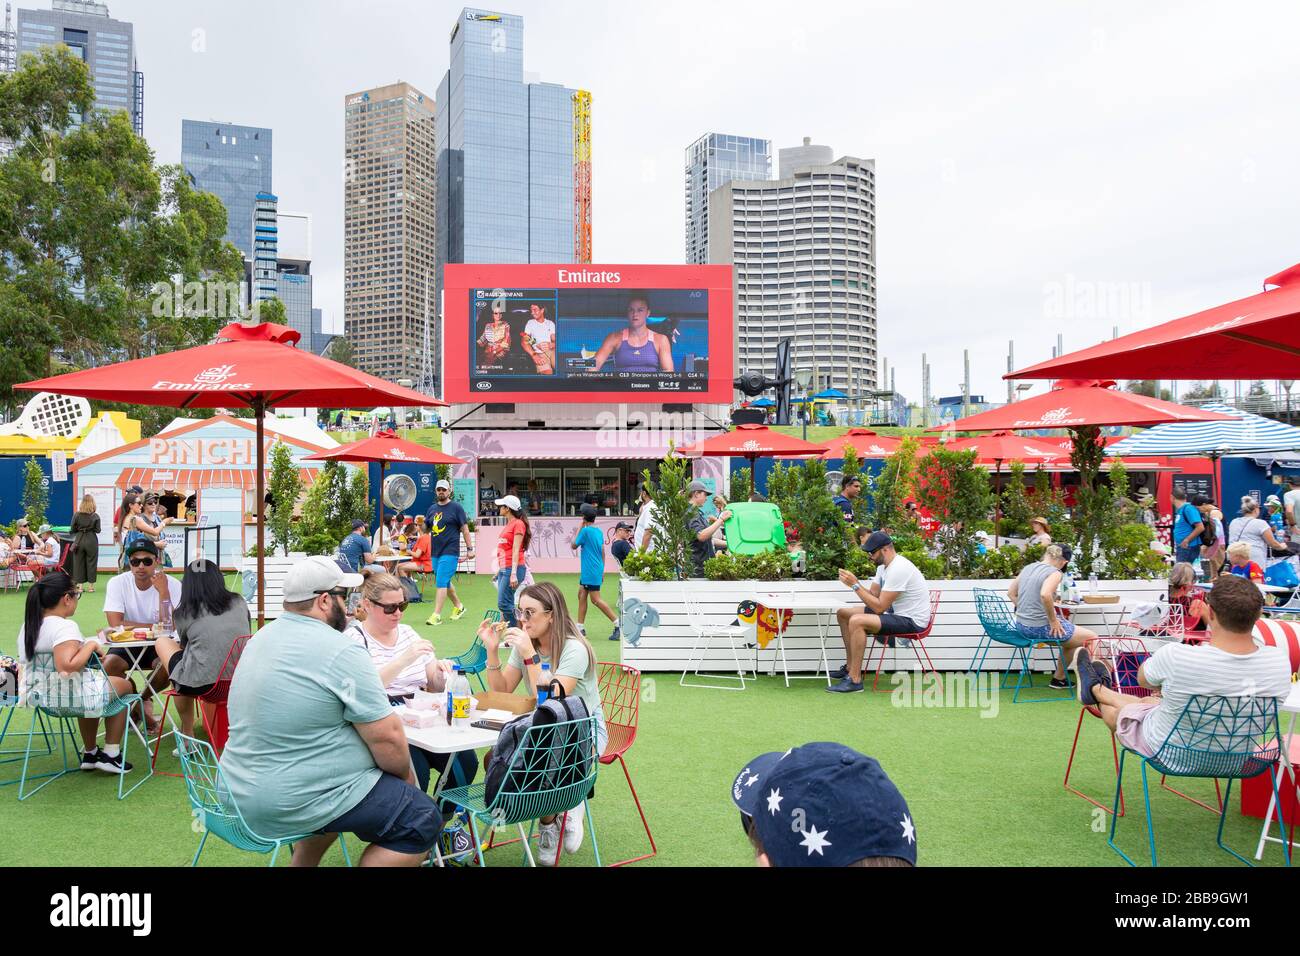 Aire de restauration extérieure au tournoi de tennis Melbourne Open 2020, City Central, Melbourne Park, Melbourne, Victoria, Australie Banque D'Images